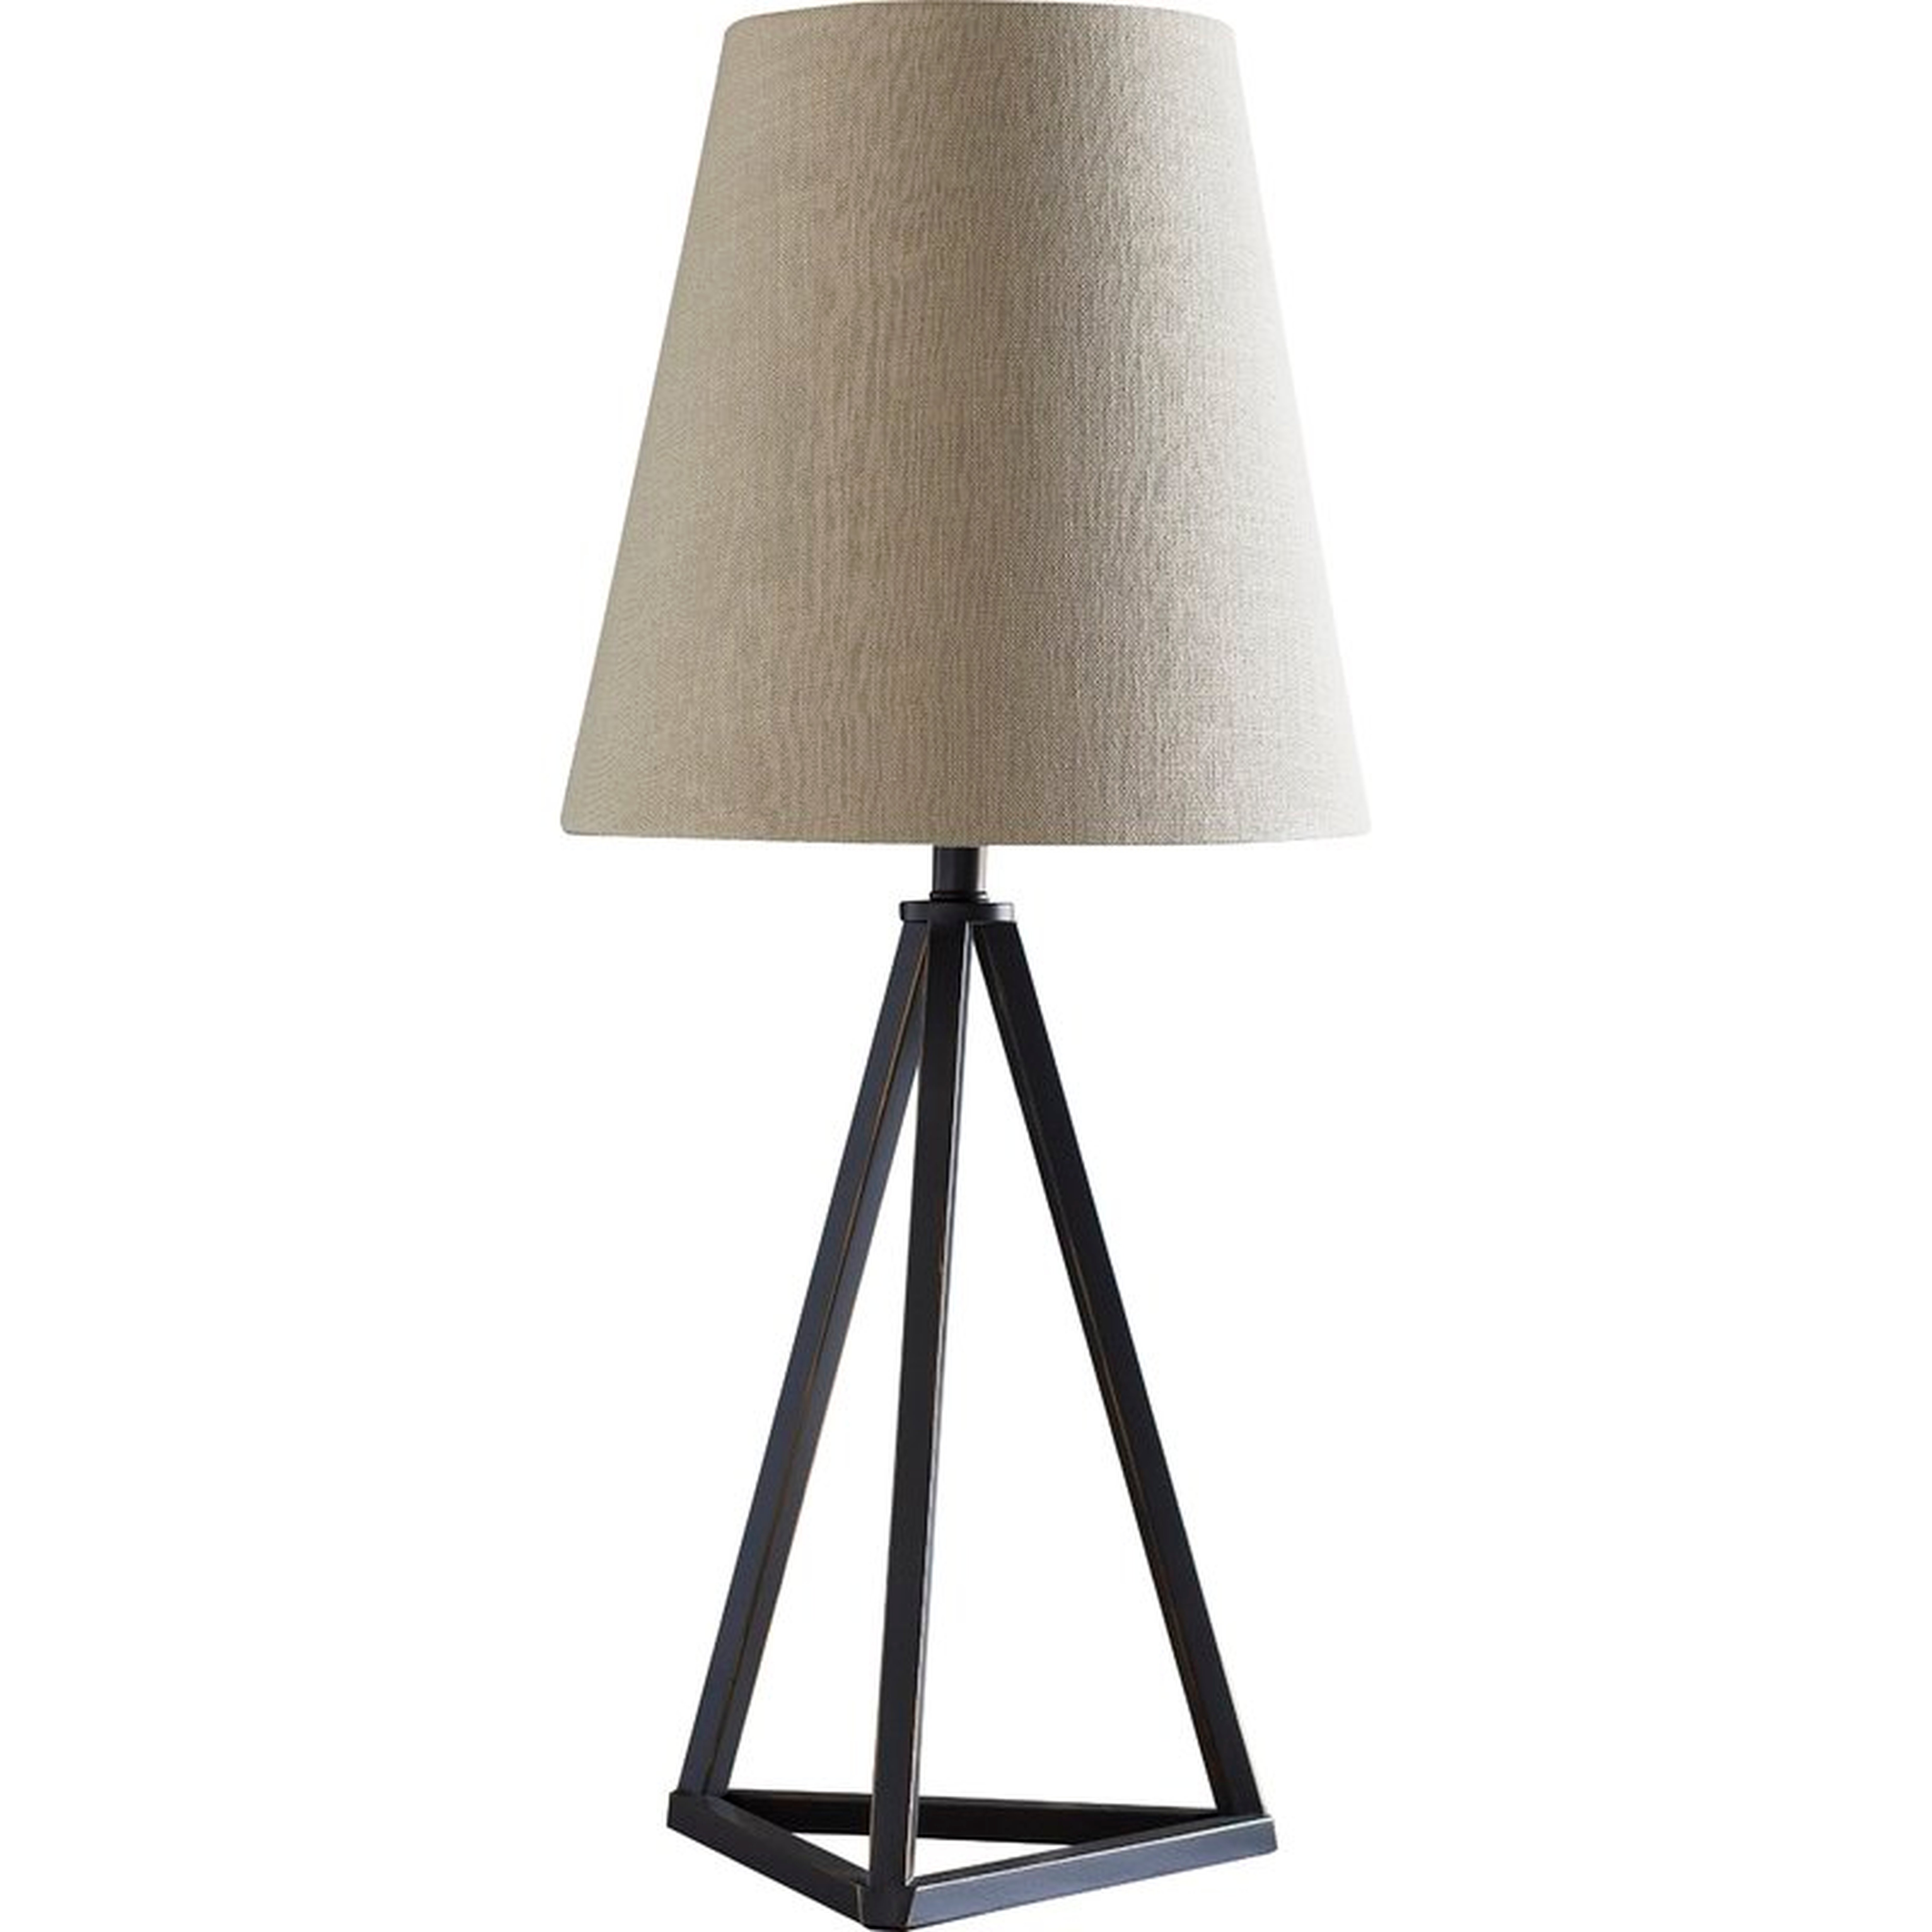 31" Table Lamp - Birch Lane